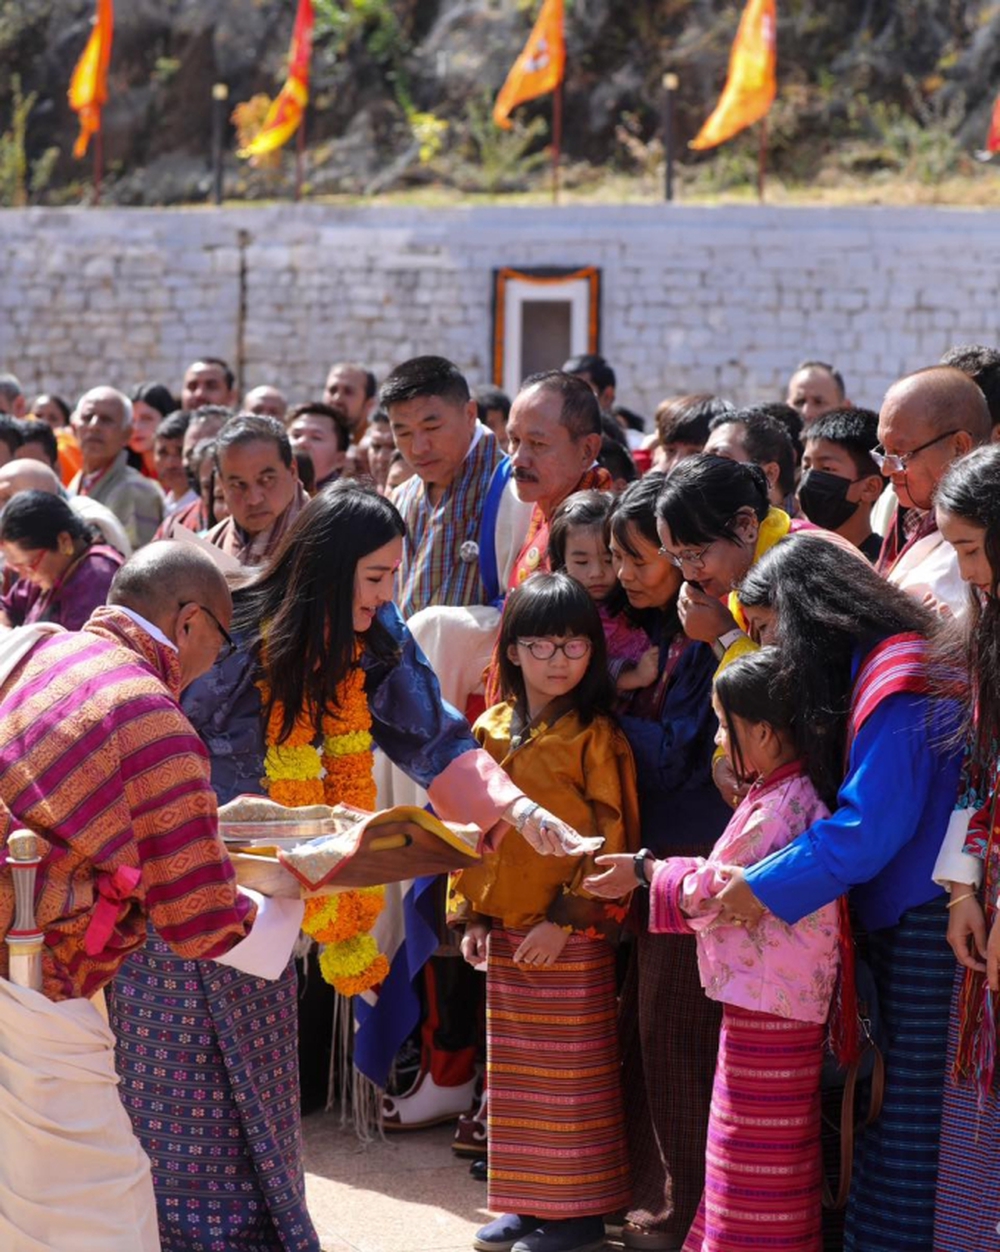 Hoàng hậu vạn người mê của Bhutan lộ diện sau khi hạ sinh công chúa, nhan sắc hiện tại khiến ai cũng bất ngờ - Ảnh 5.